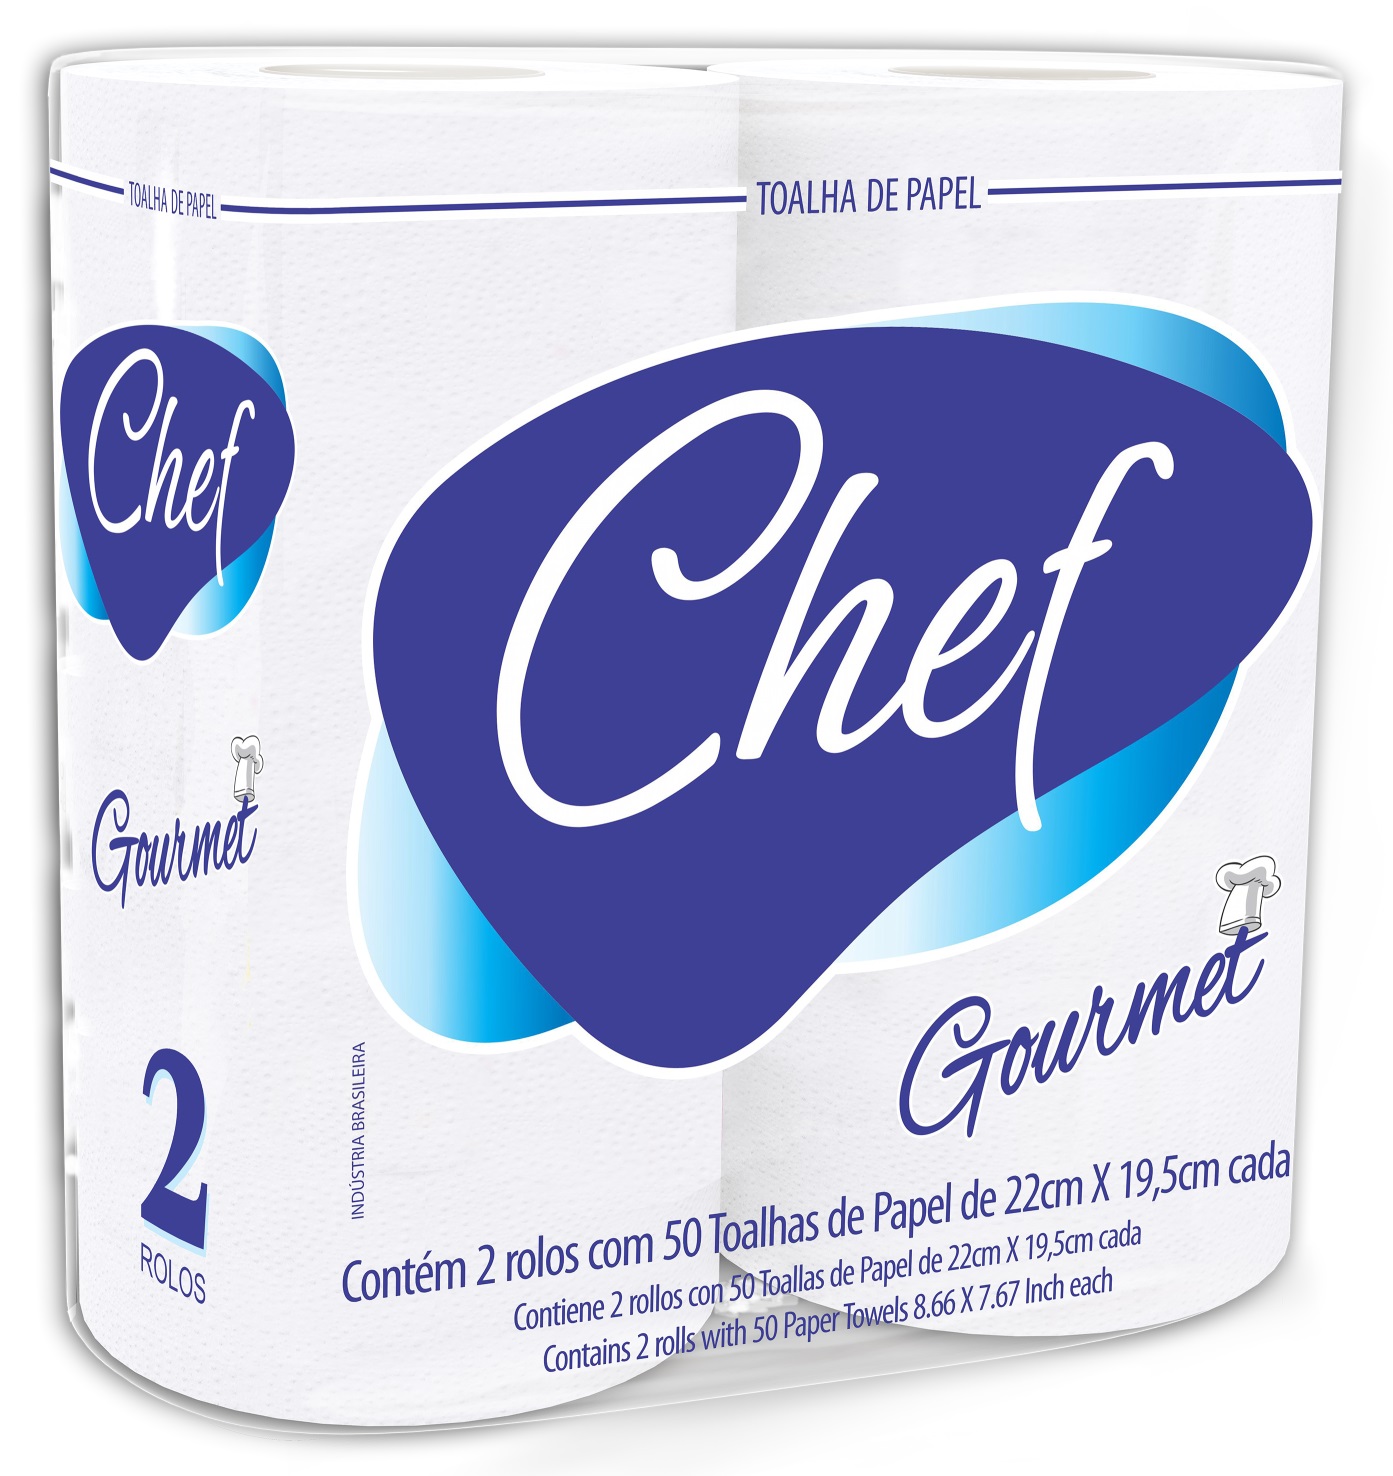 Toalha de papel, CHEF GOURMET 100% celulose virgem.